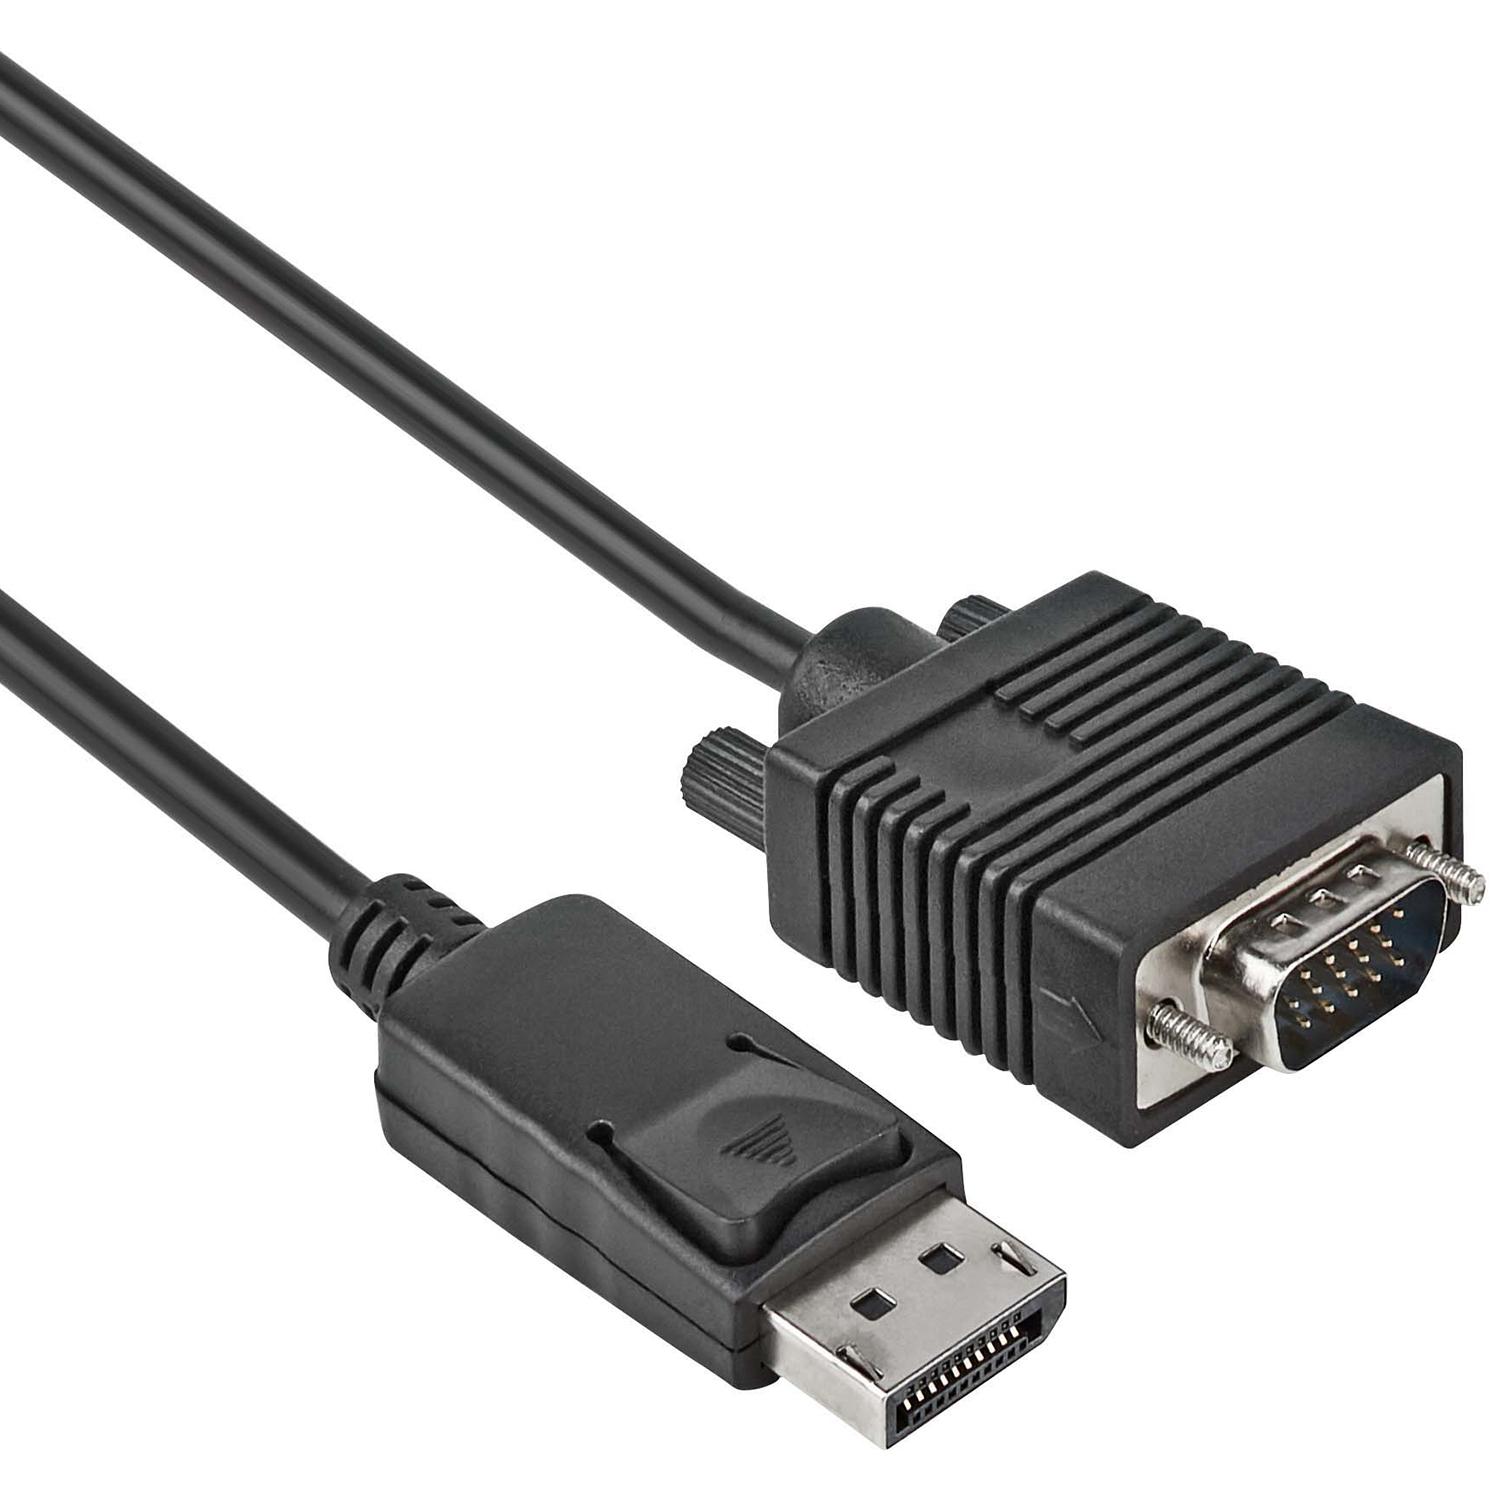 Afhankelijk mentaal Staat DisplayPort naar VGA kabel - DisplayPort naar VGA Kabel - Zwart, Type: 1.1  - 1920 x 1080, Aansluiting 1: Displayport Male, Aansluiting 2: VGA Male, 1  meter.